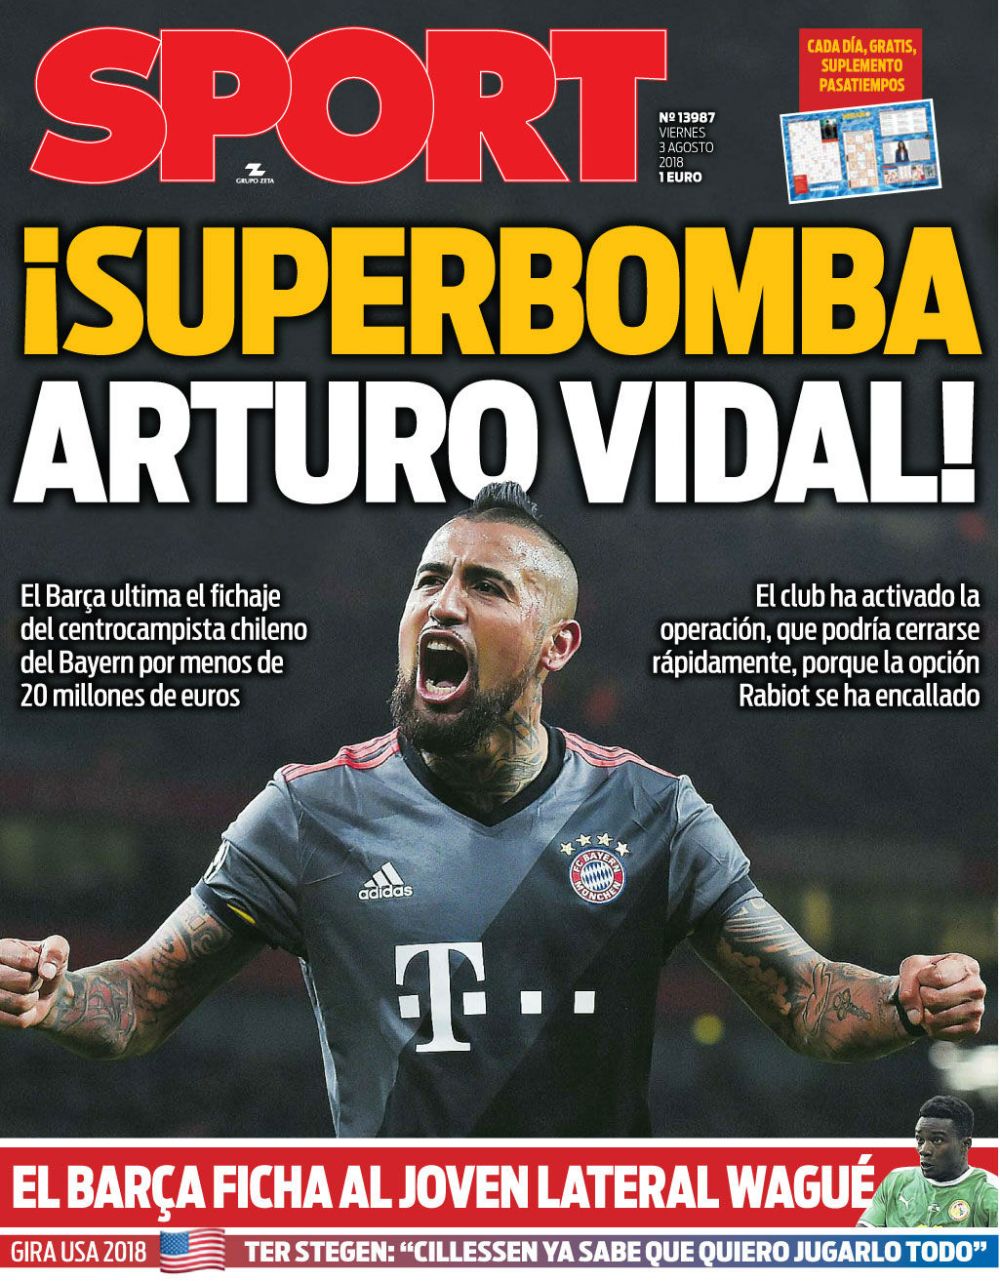 Vidal, la Barcelona! MOTIVUL pentru transferul surprinzator al mijlocasului de la Bayern! _3